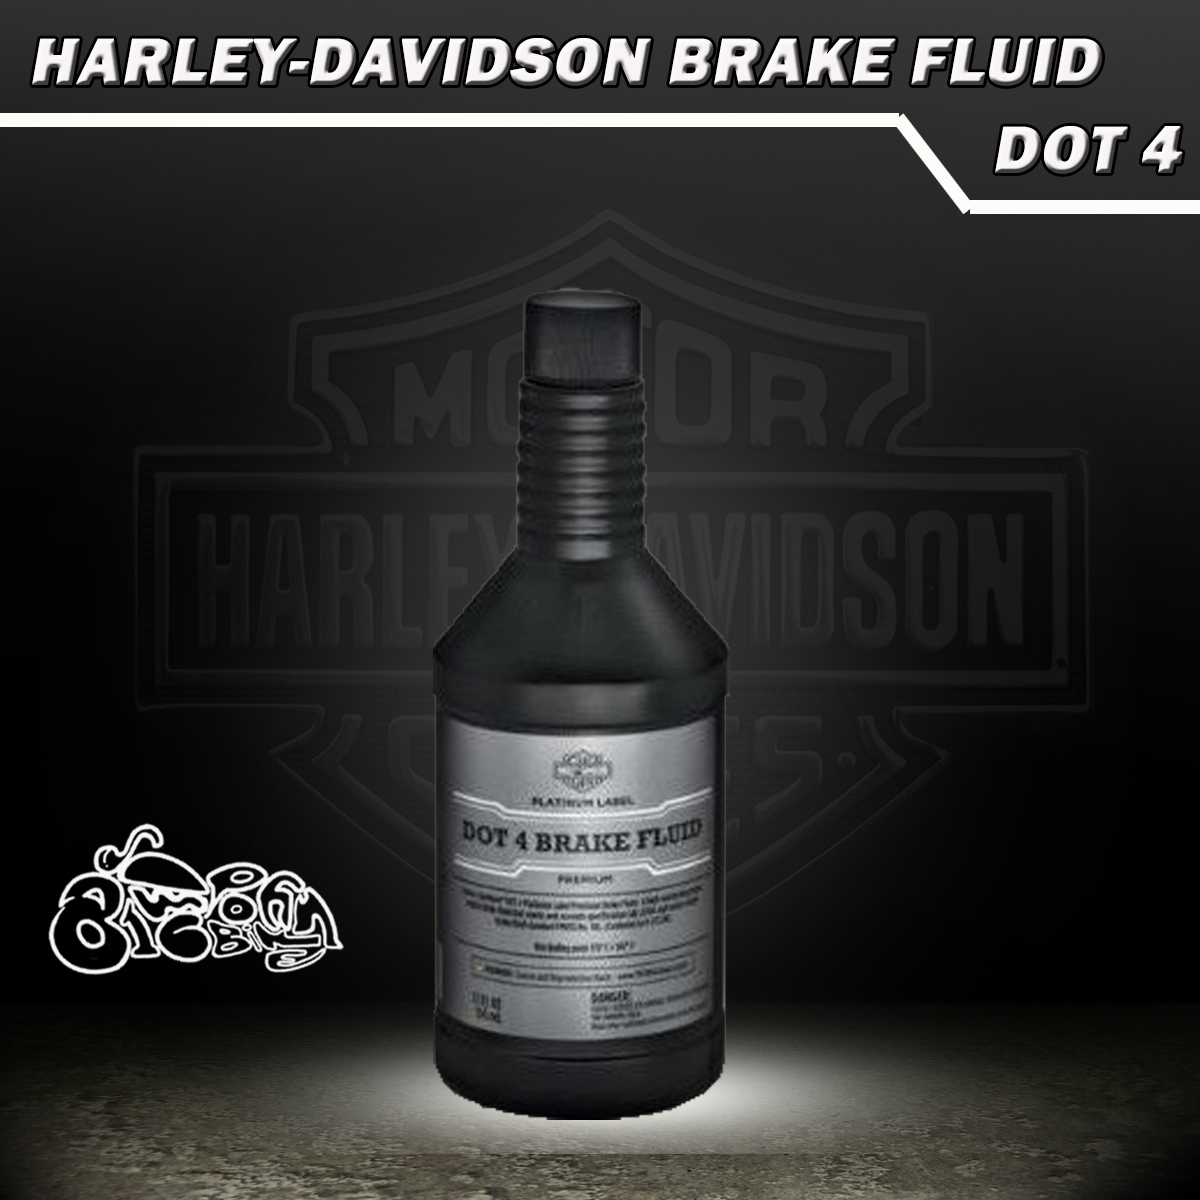 น้ำมันเบรค ฮาเลย์ เดวิดสัน แพลตตินั่ม ดอท 4 Brake Fluid Harley Davidson Platinum DOT4